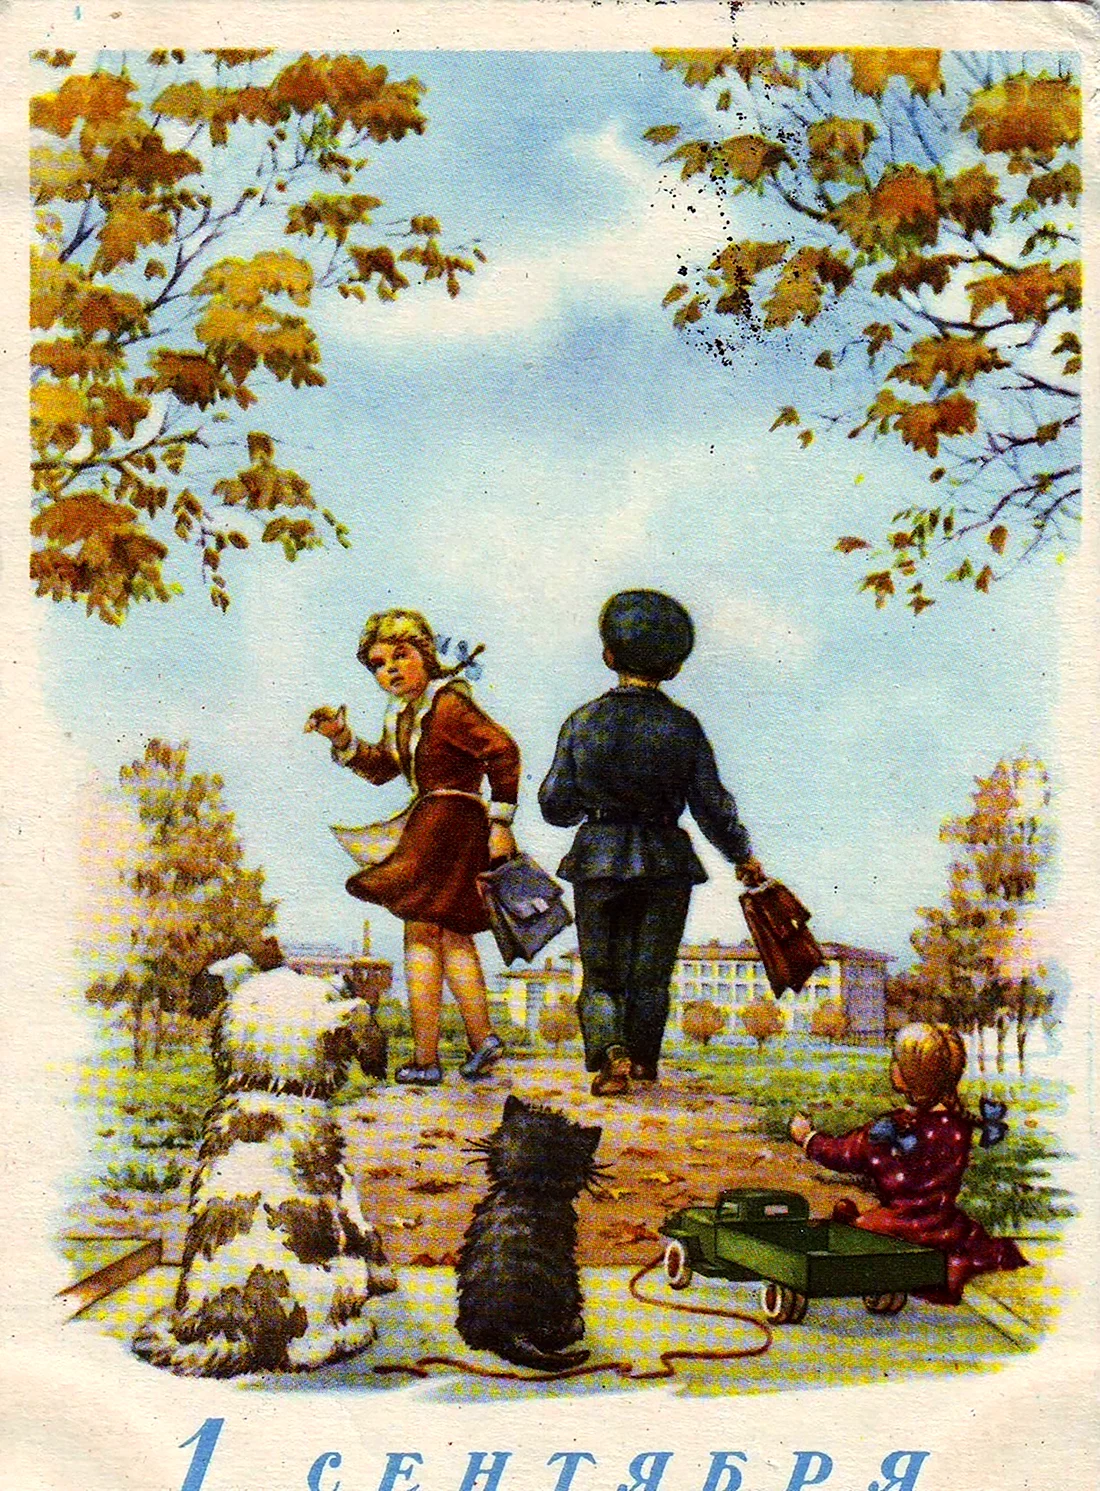 Советские открытки с 1 сентября. Поздравление на праздник